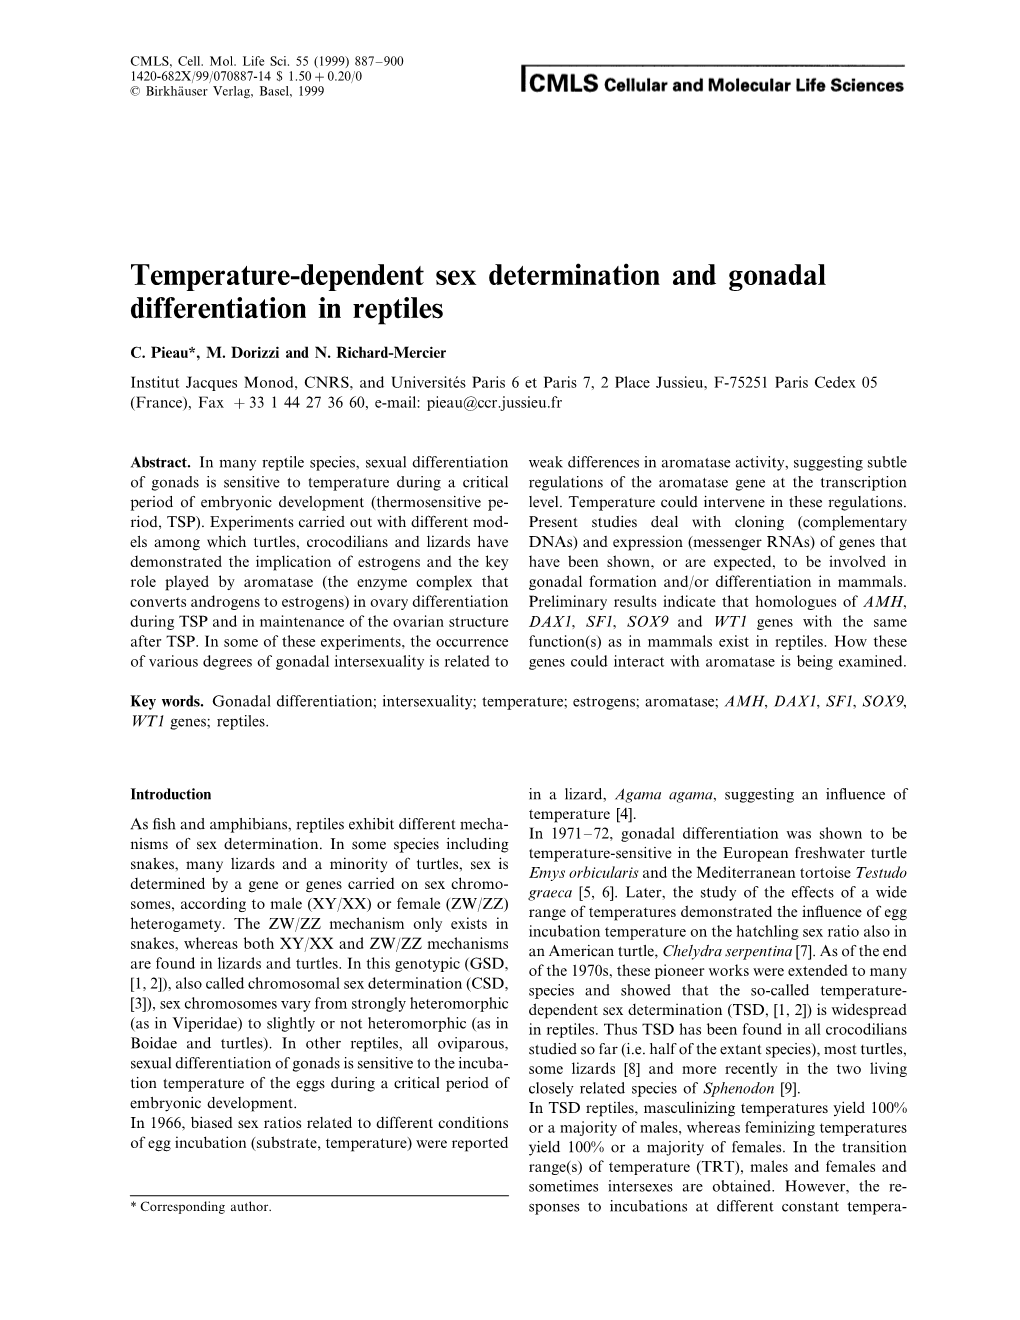 Temperature-Dependent Sex Determination and Gonadal Differentiation in Reptiles